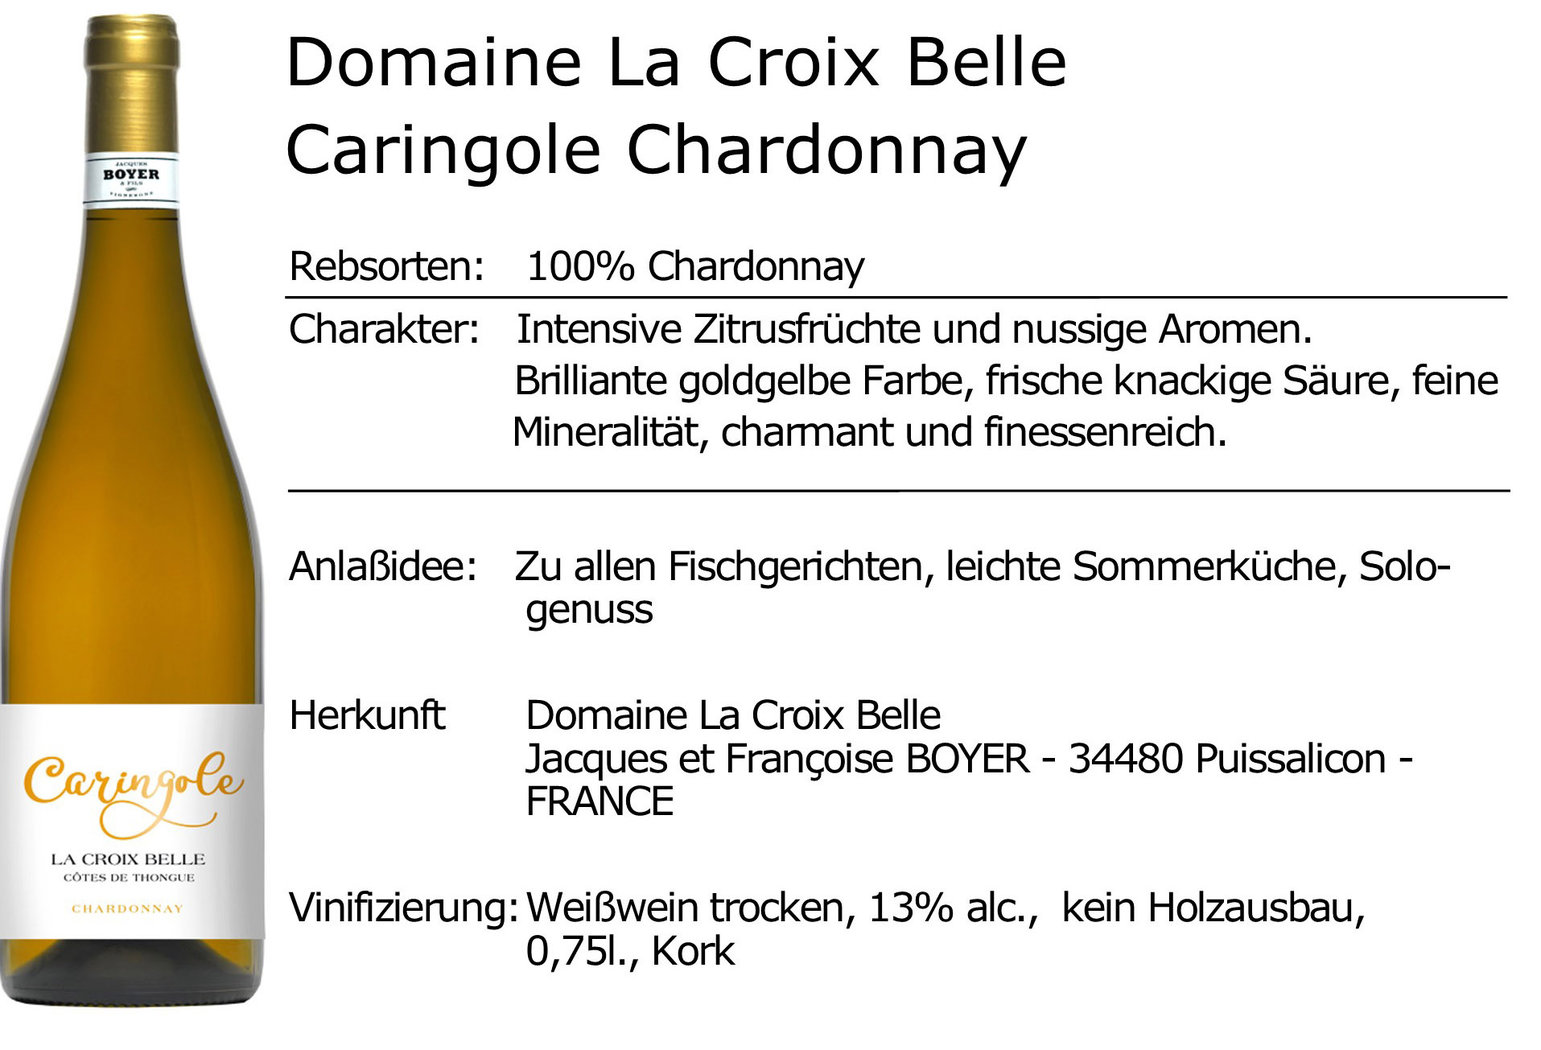 Domaine La Croix Belle Caringole Chardonnay 2020